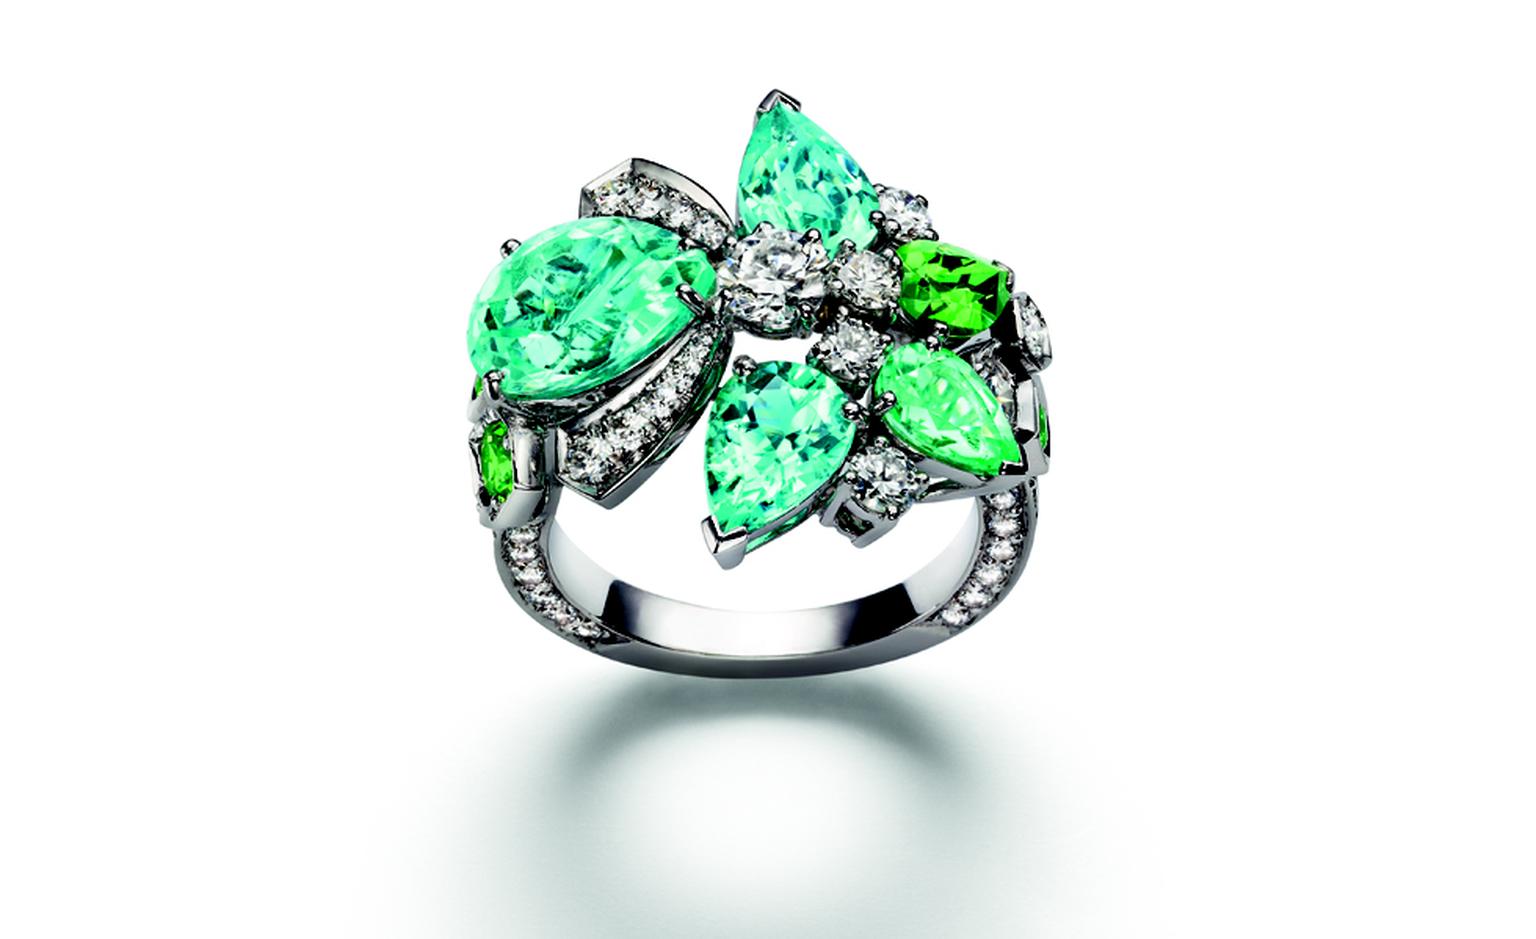 Chaumet Bee My Love ring with diamonds, tourmalines and tsavorite garnets.